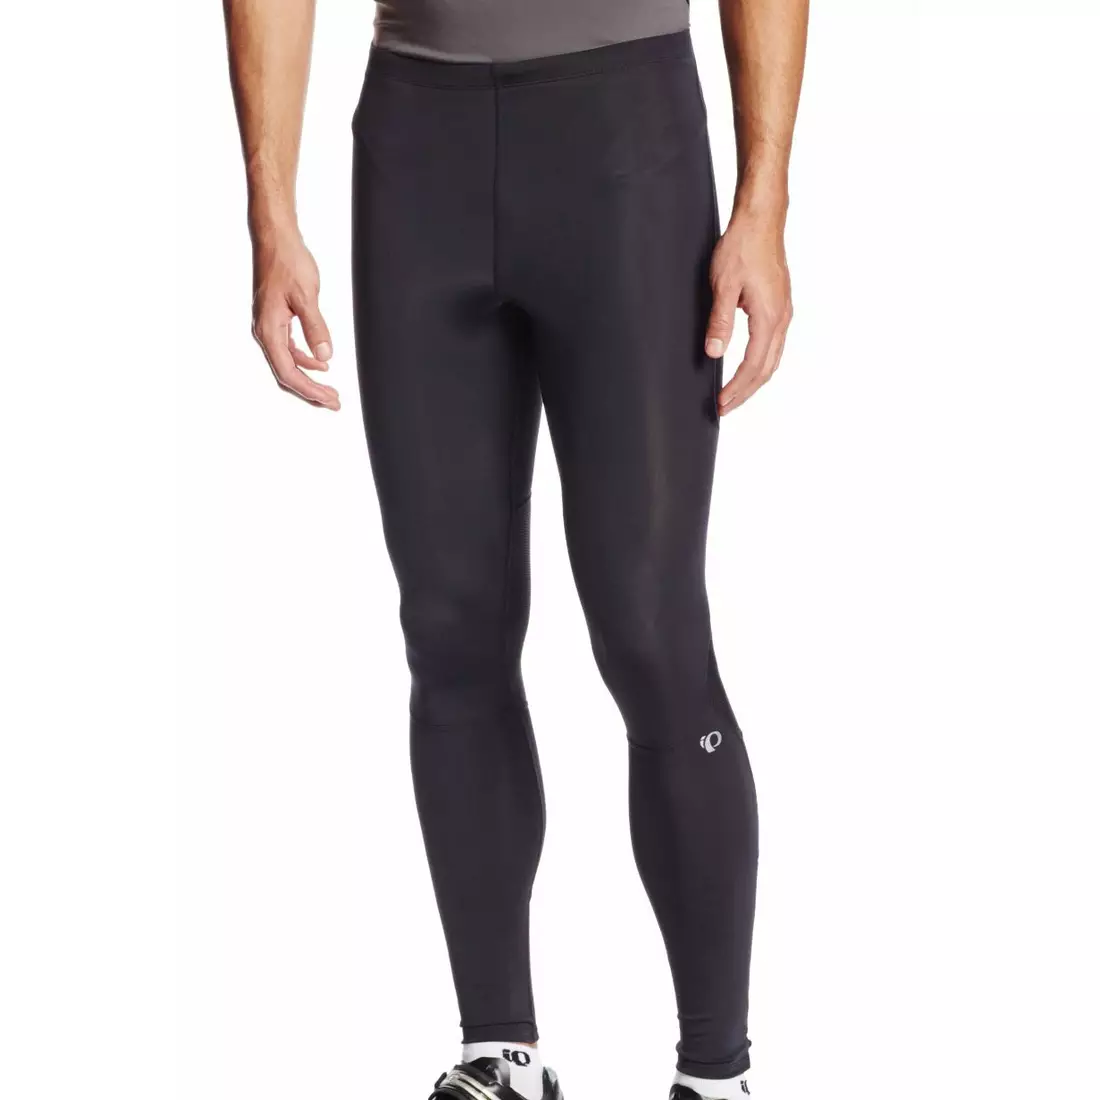 PEARL IZUMI RUN pánské běžecké kalhoty FLY 12111407-021, barva: černá